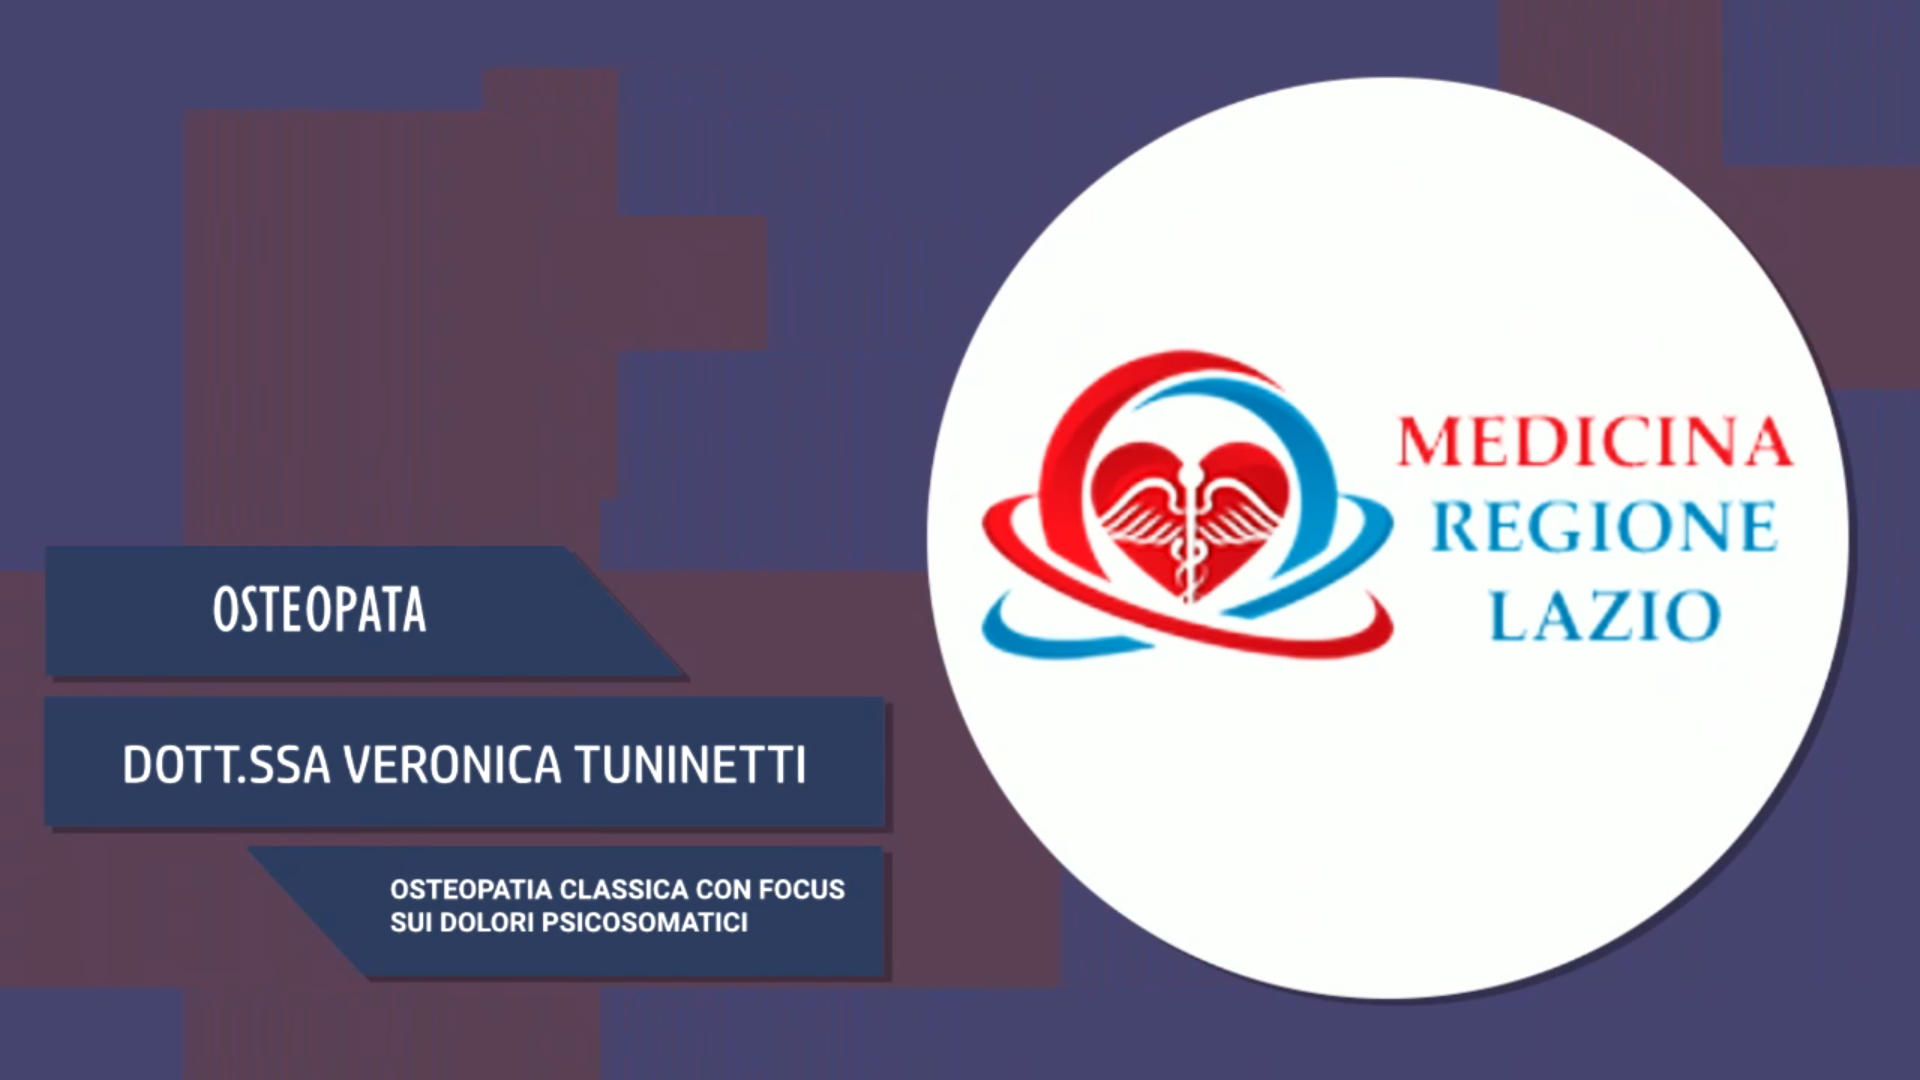 Intervista alla Dott.ssa Veronica Tuninetti – Osteopatia classica con focus sui dolori psicosomatici